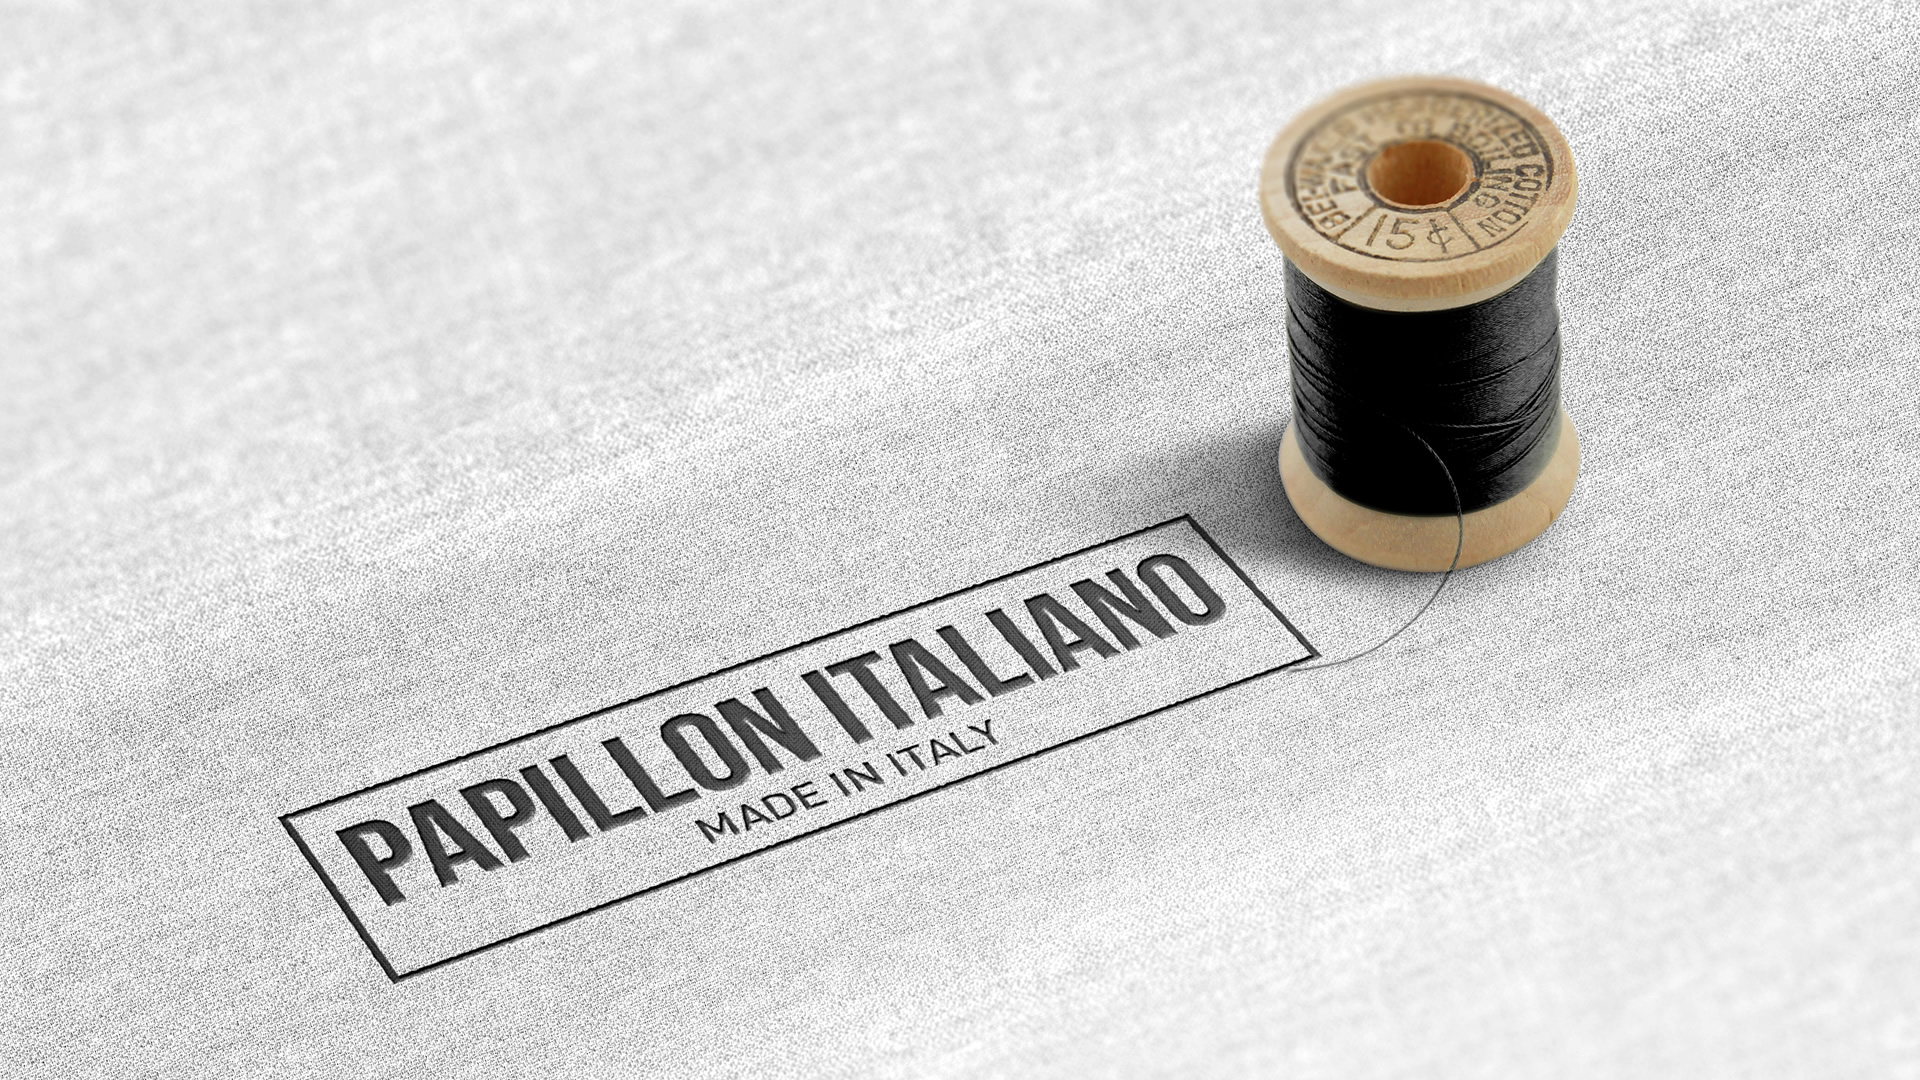 Papillon Italiano Realizzazione logo Brand Identity - web graphic designer - brand - web eCommerce - Patrizio Rossi